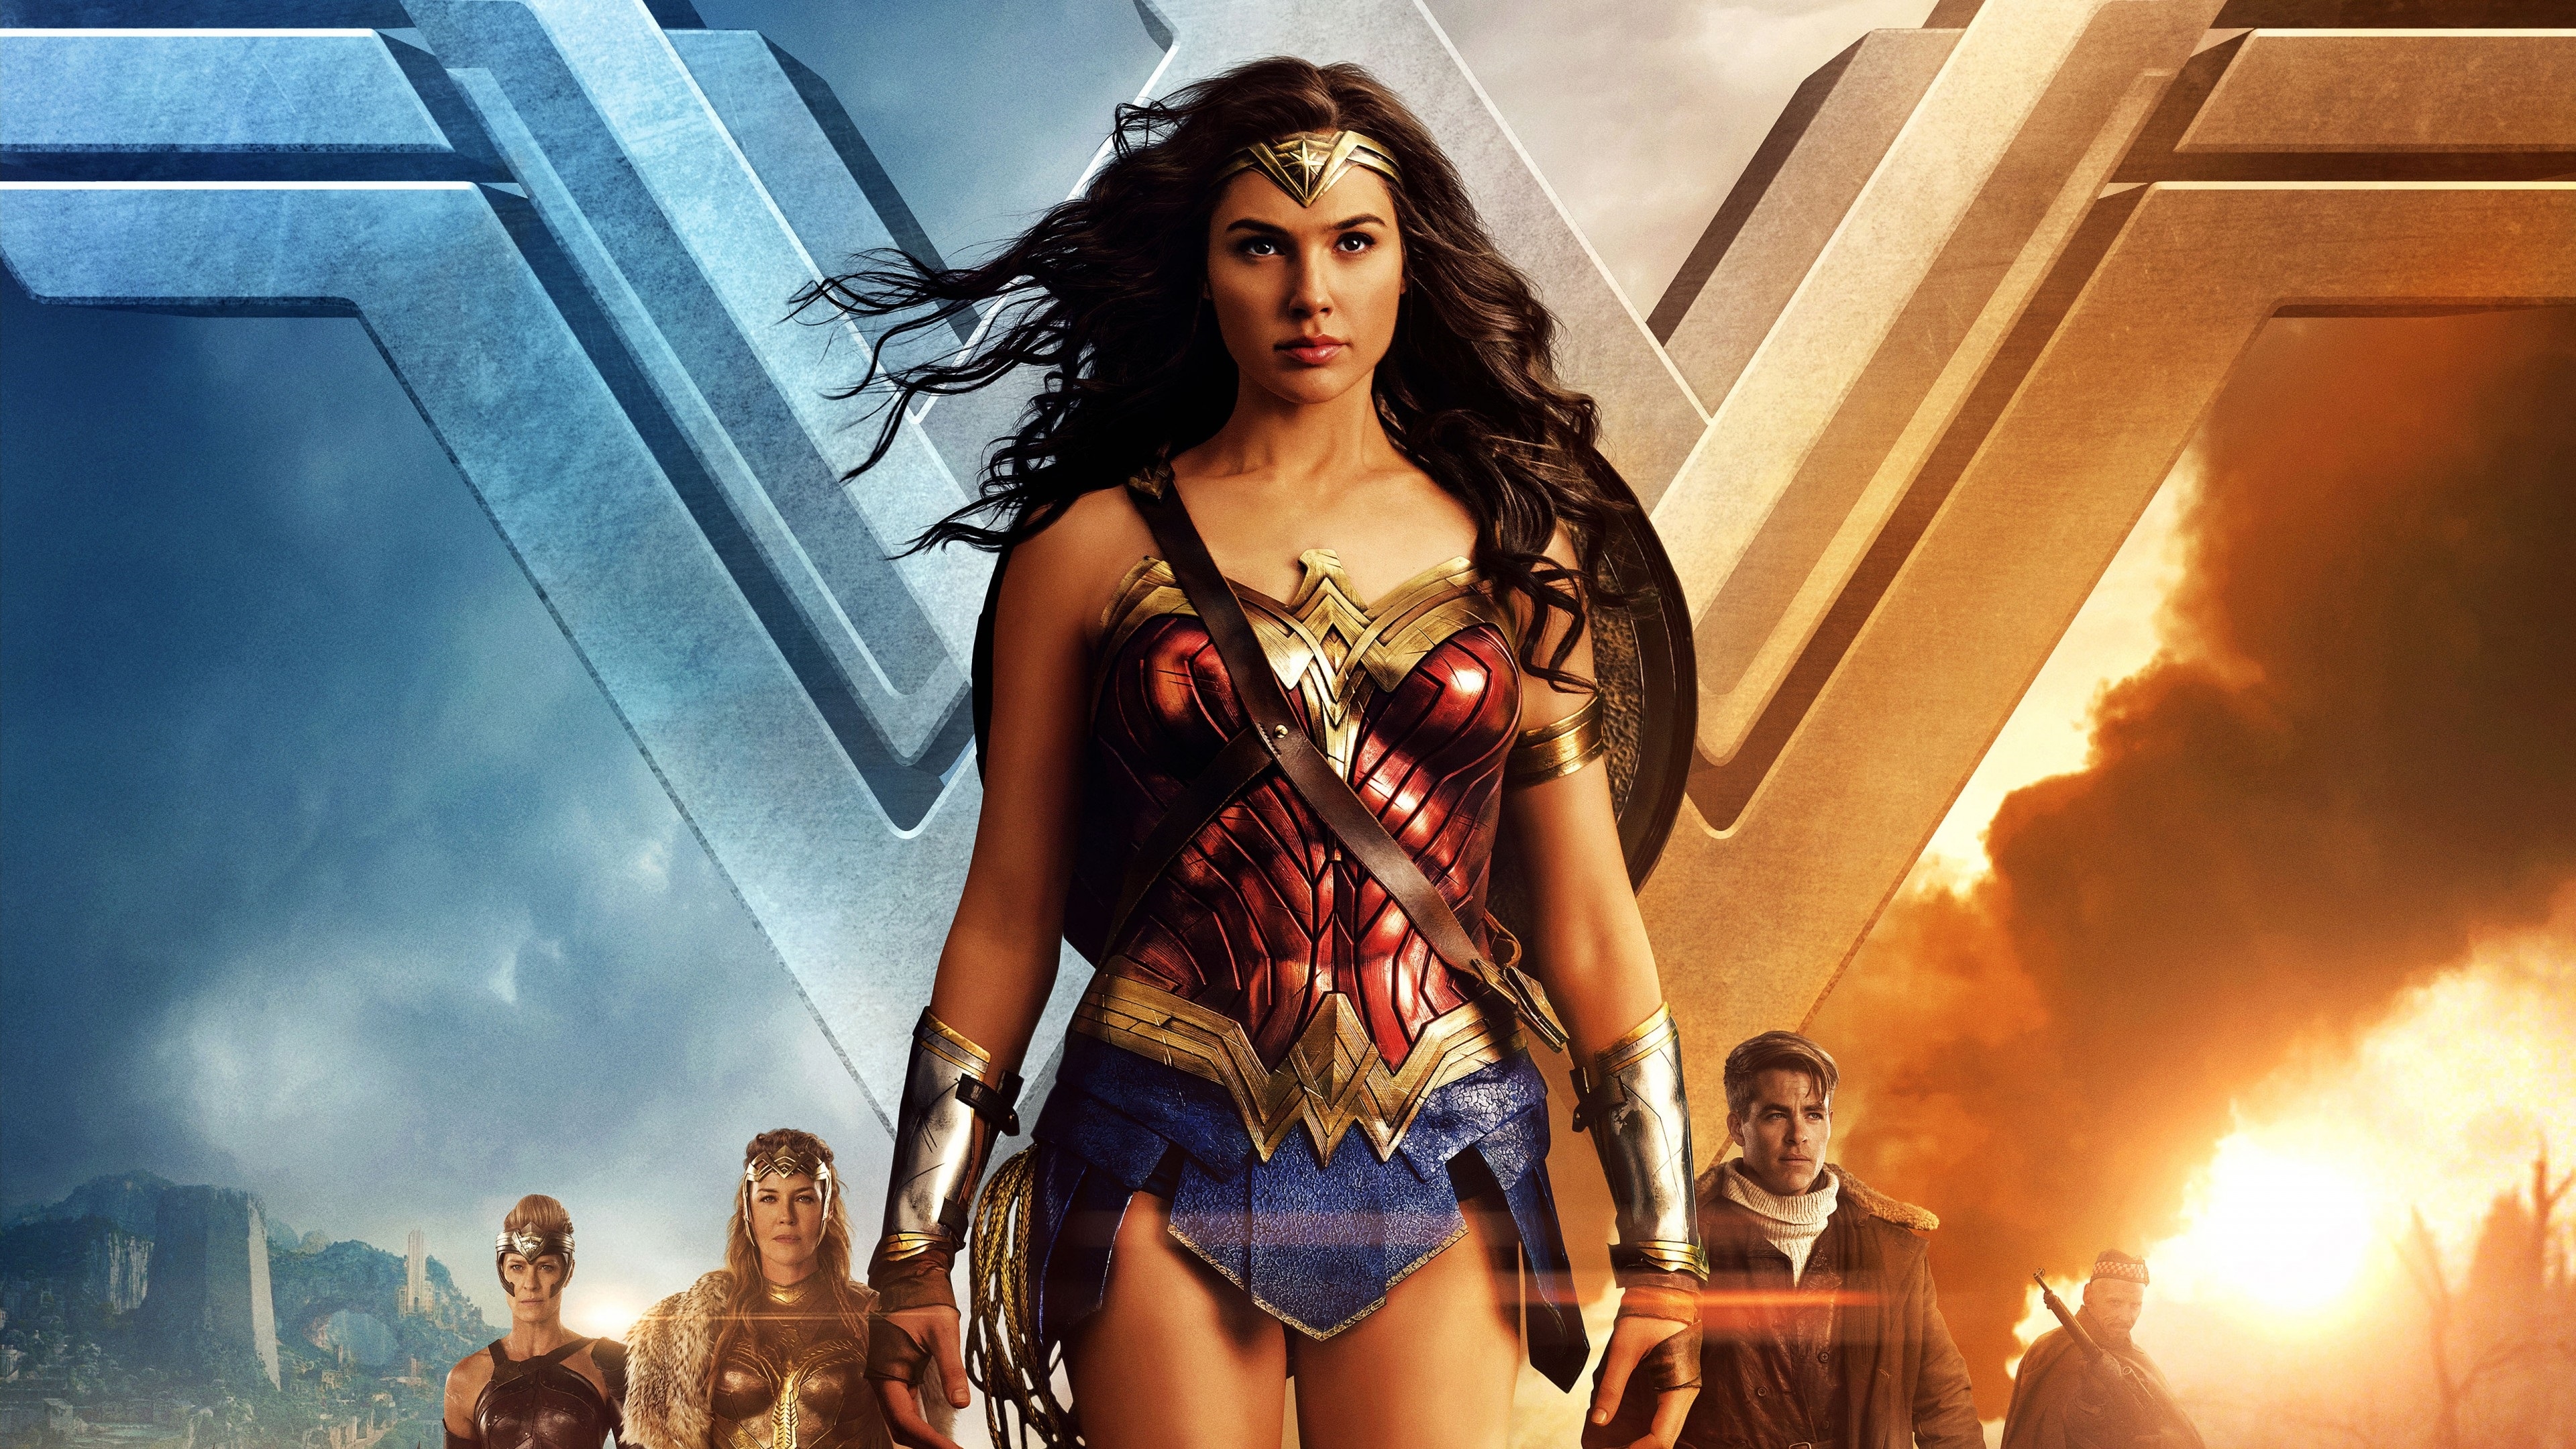 Wonder Woman Gal Gadot 2017 for 3840 x 2160 4K Ultra HDTV resolution